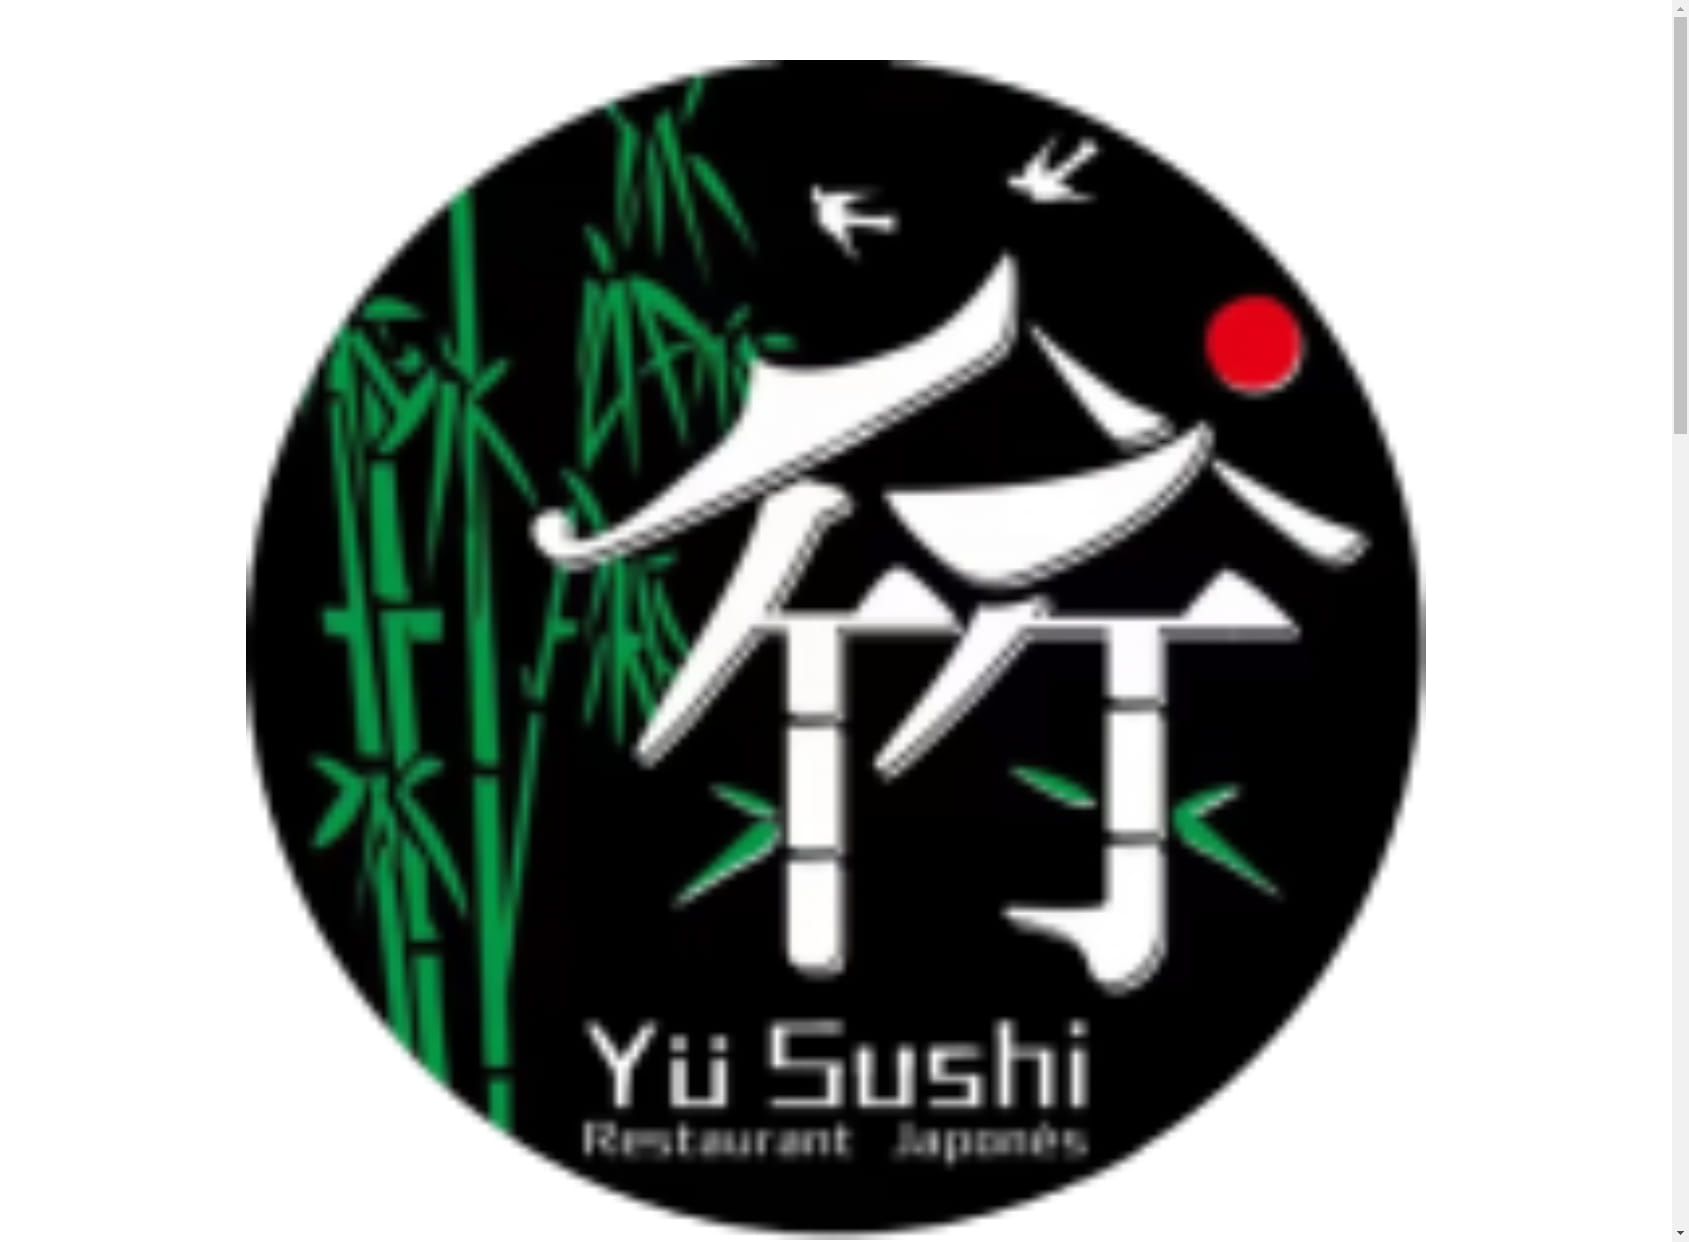 Yu sushi